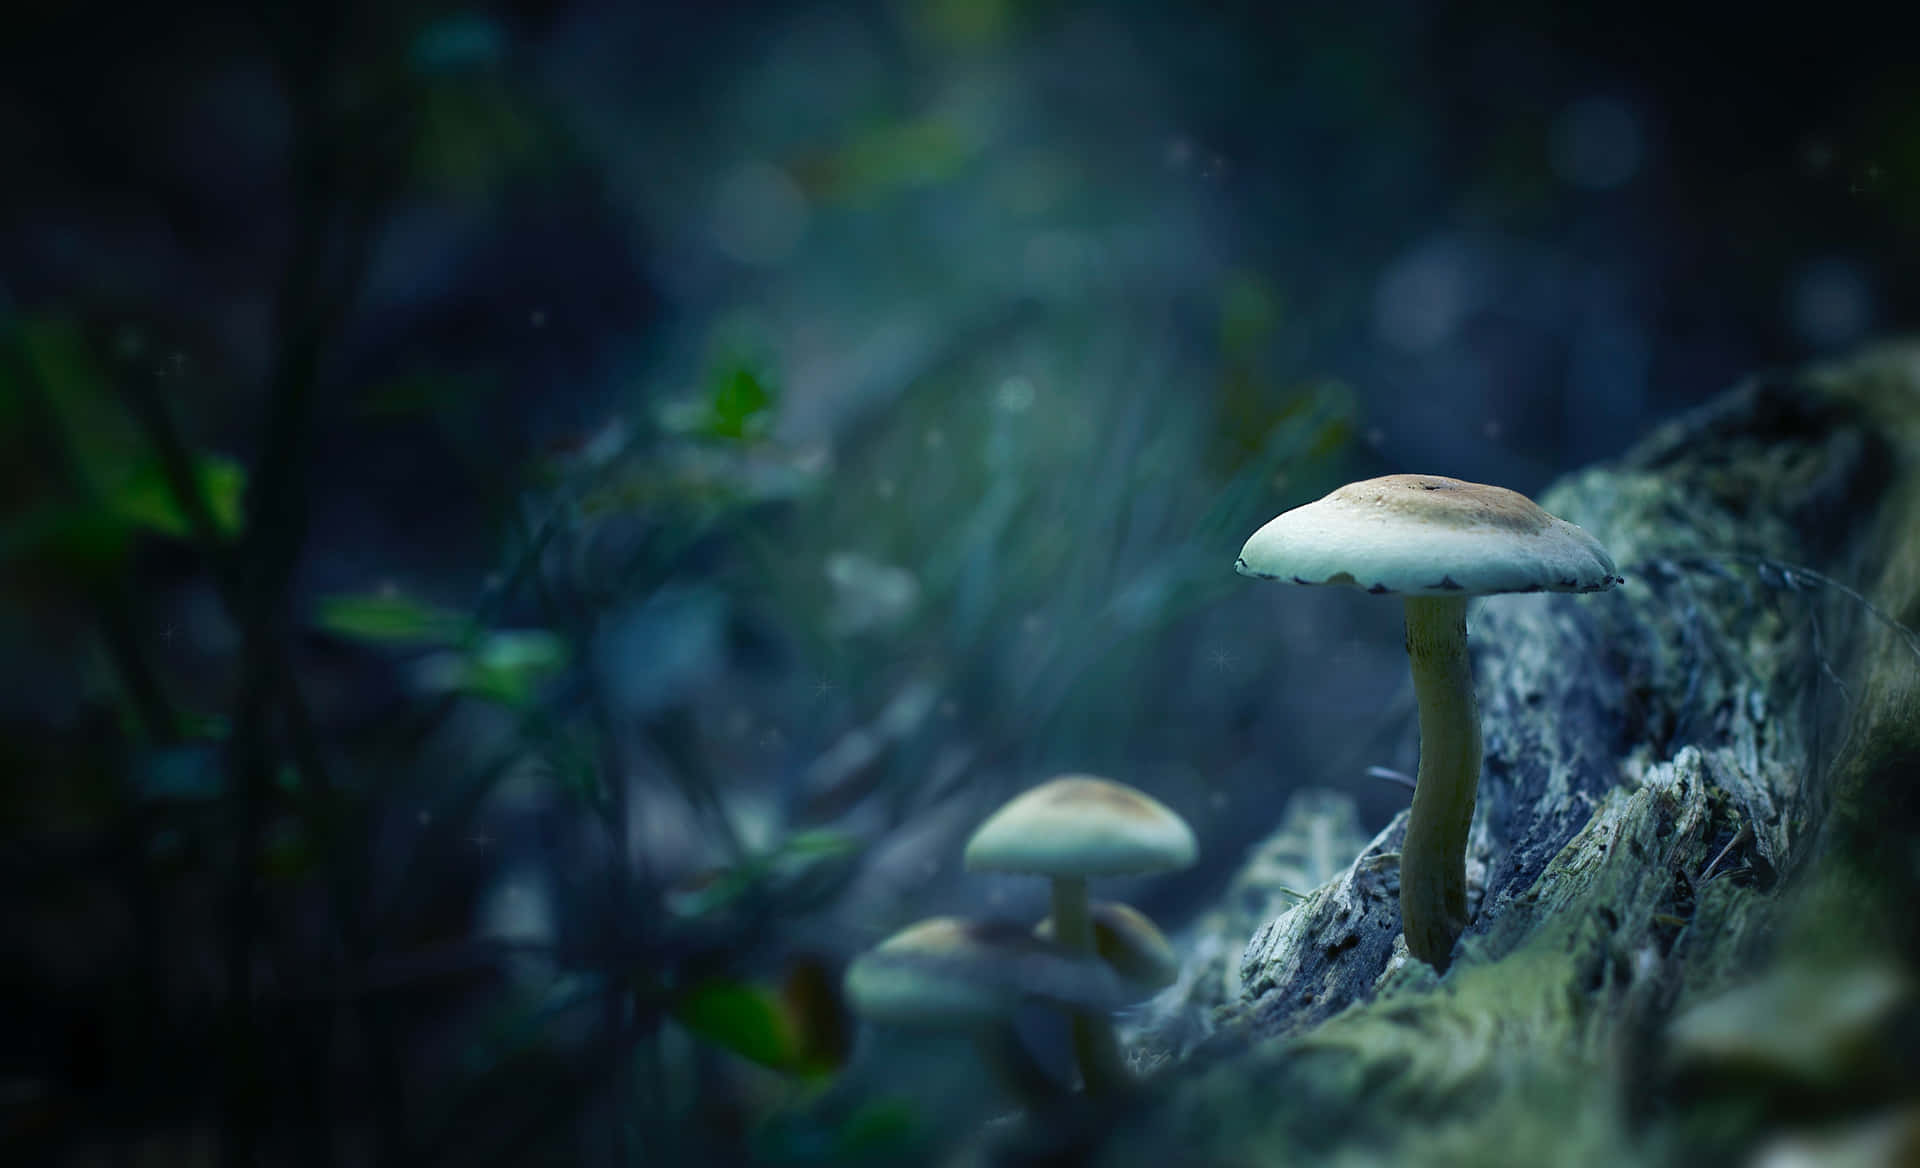 Billeder af svampe, der afbilder luksuriøse marker med vilde skovsvampe